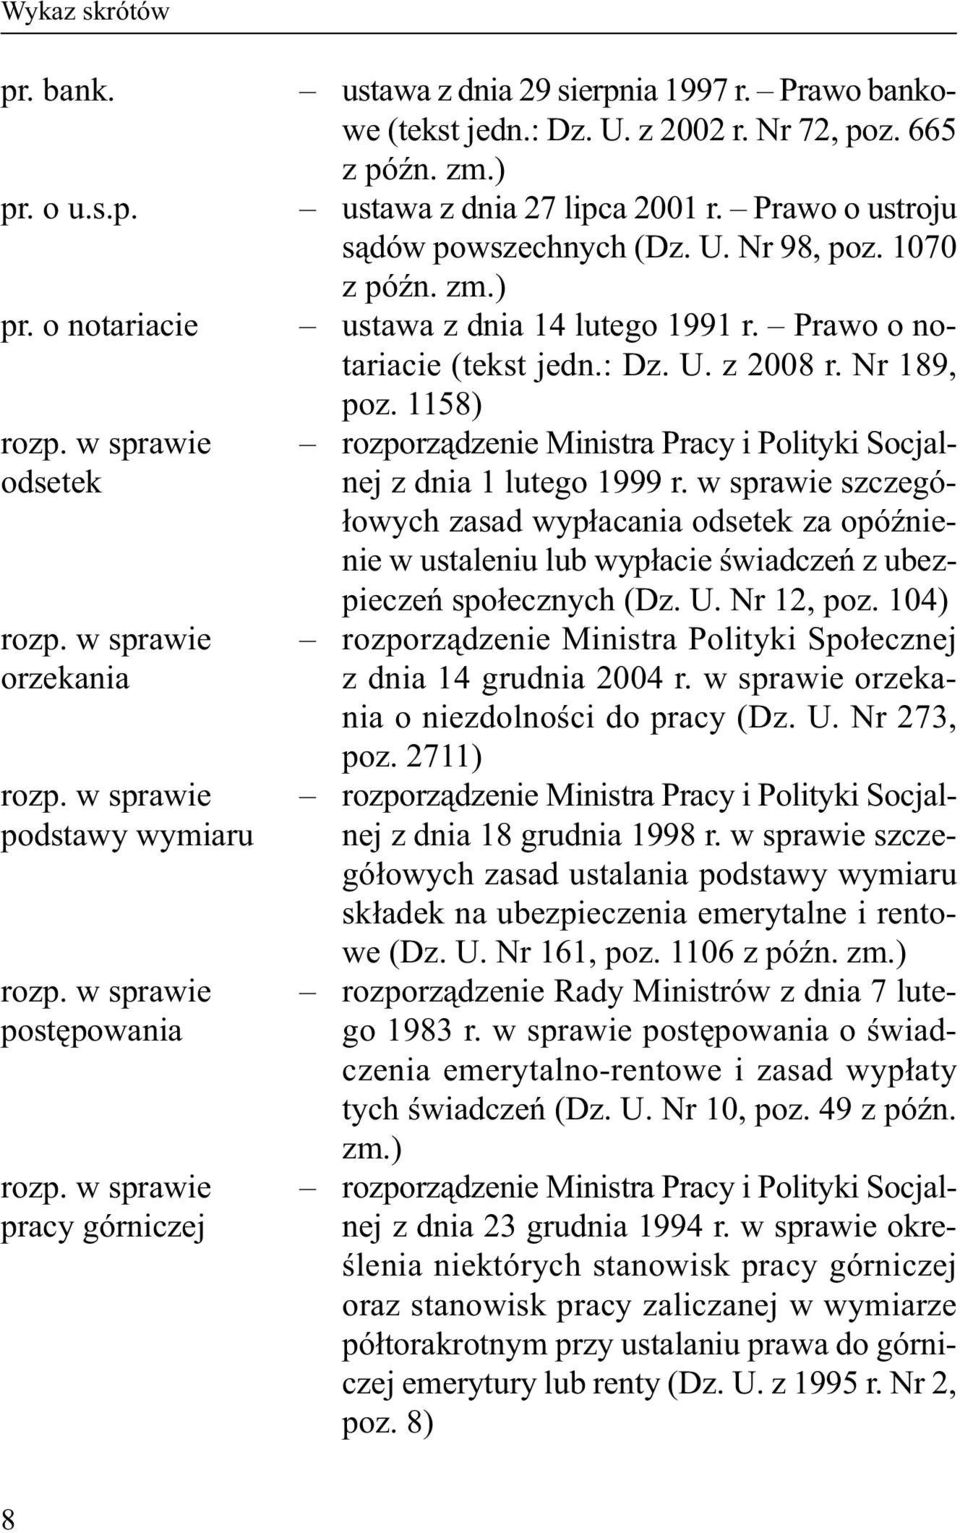 w sprawie postępowania rozporządzenie Ministra Pracy i Polityki Socjal- nej z dnia 23 grudnia 1994 r.